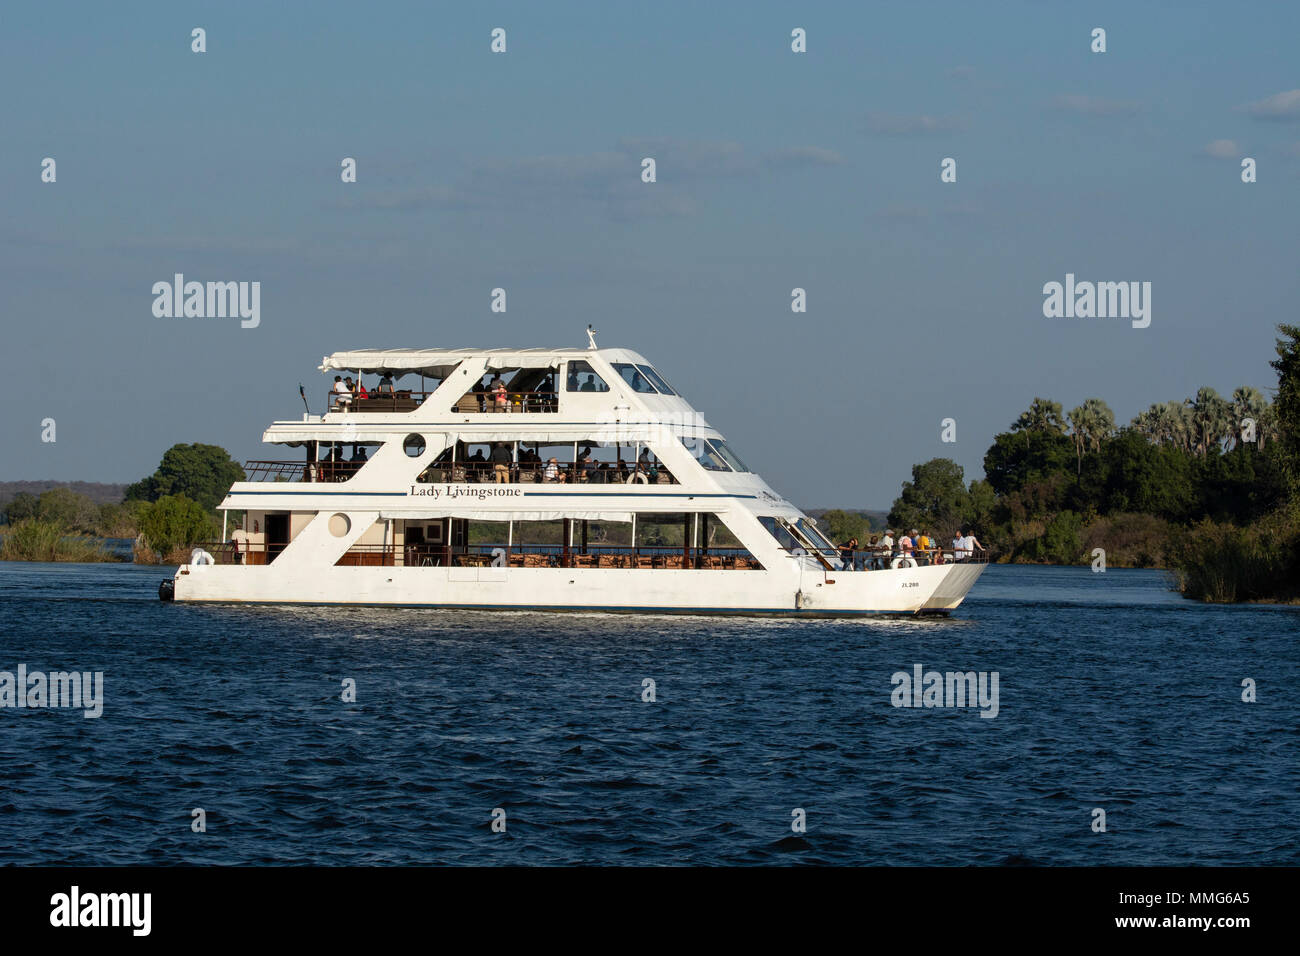 Africa, Zimbabwe, Zambezi River, near Victoria Falls. Sightseeing cruise boat, Lady Livingstone, on the Zambezi River. Stock Photo